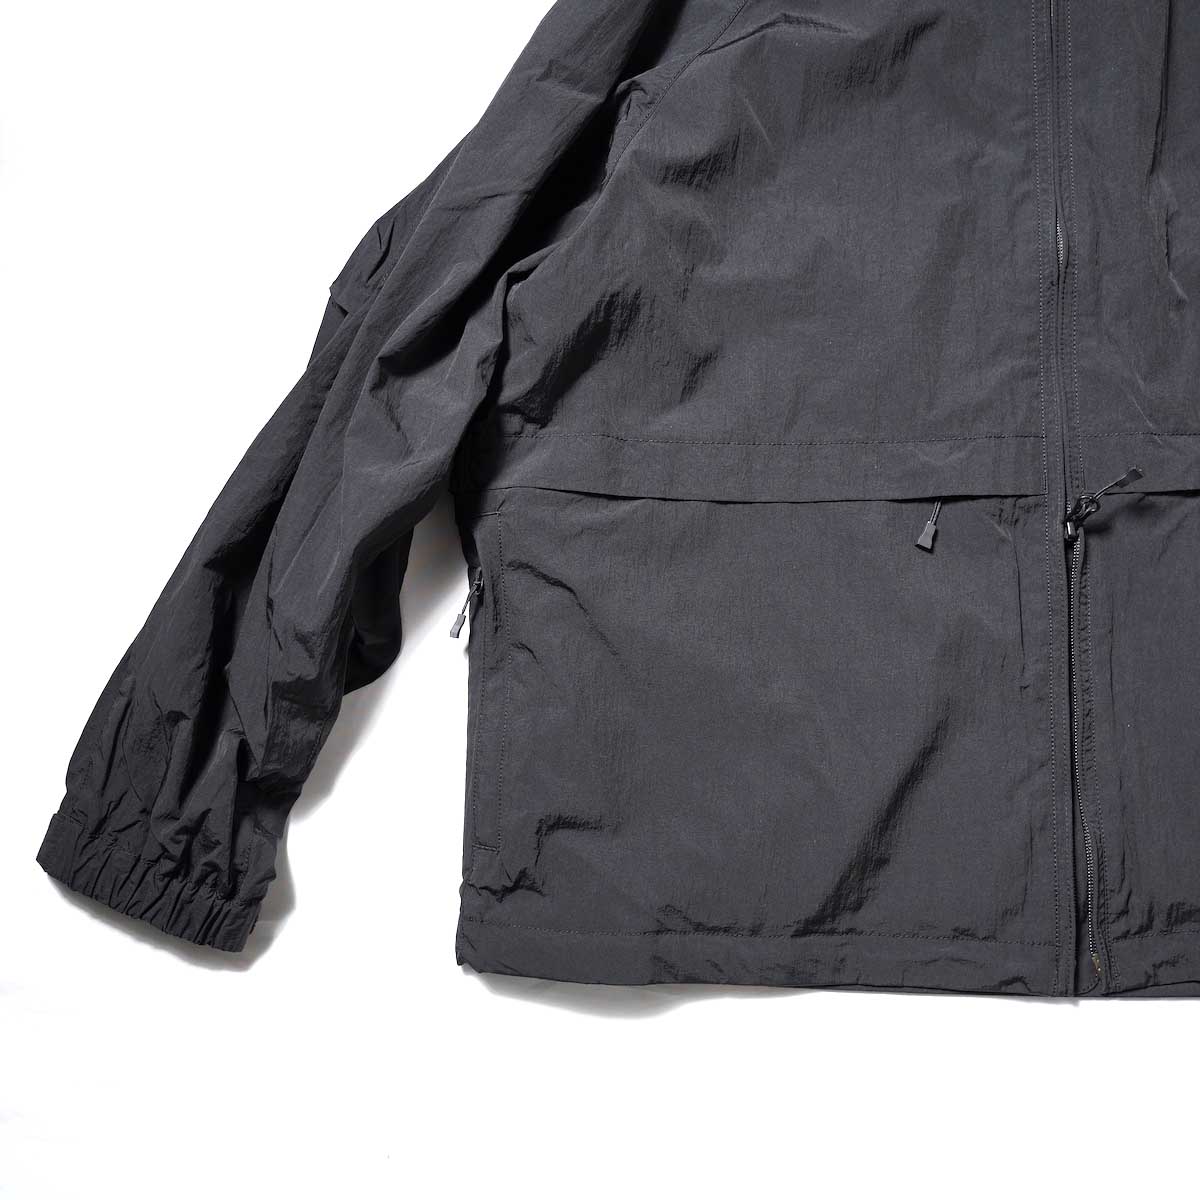 DAIWA PIER39 / Tech Windbreaker Jacket (Black)袖、裾